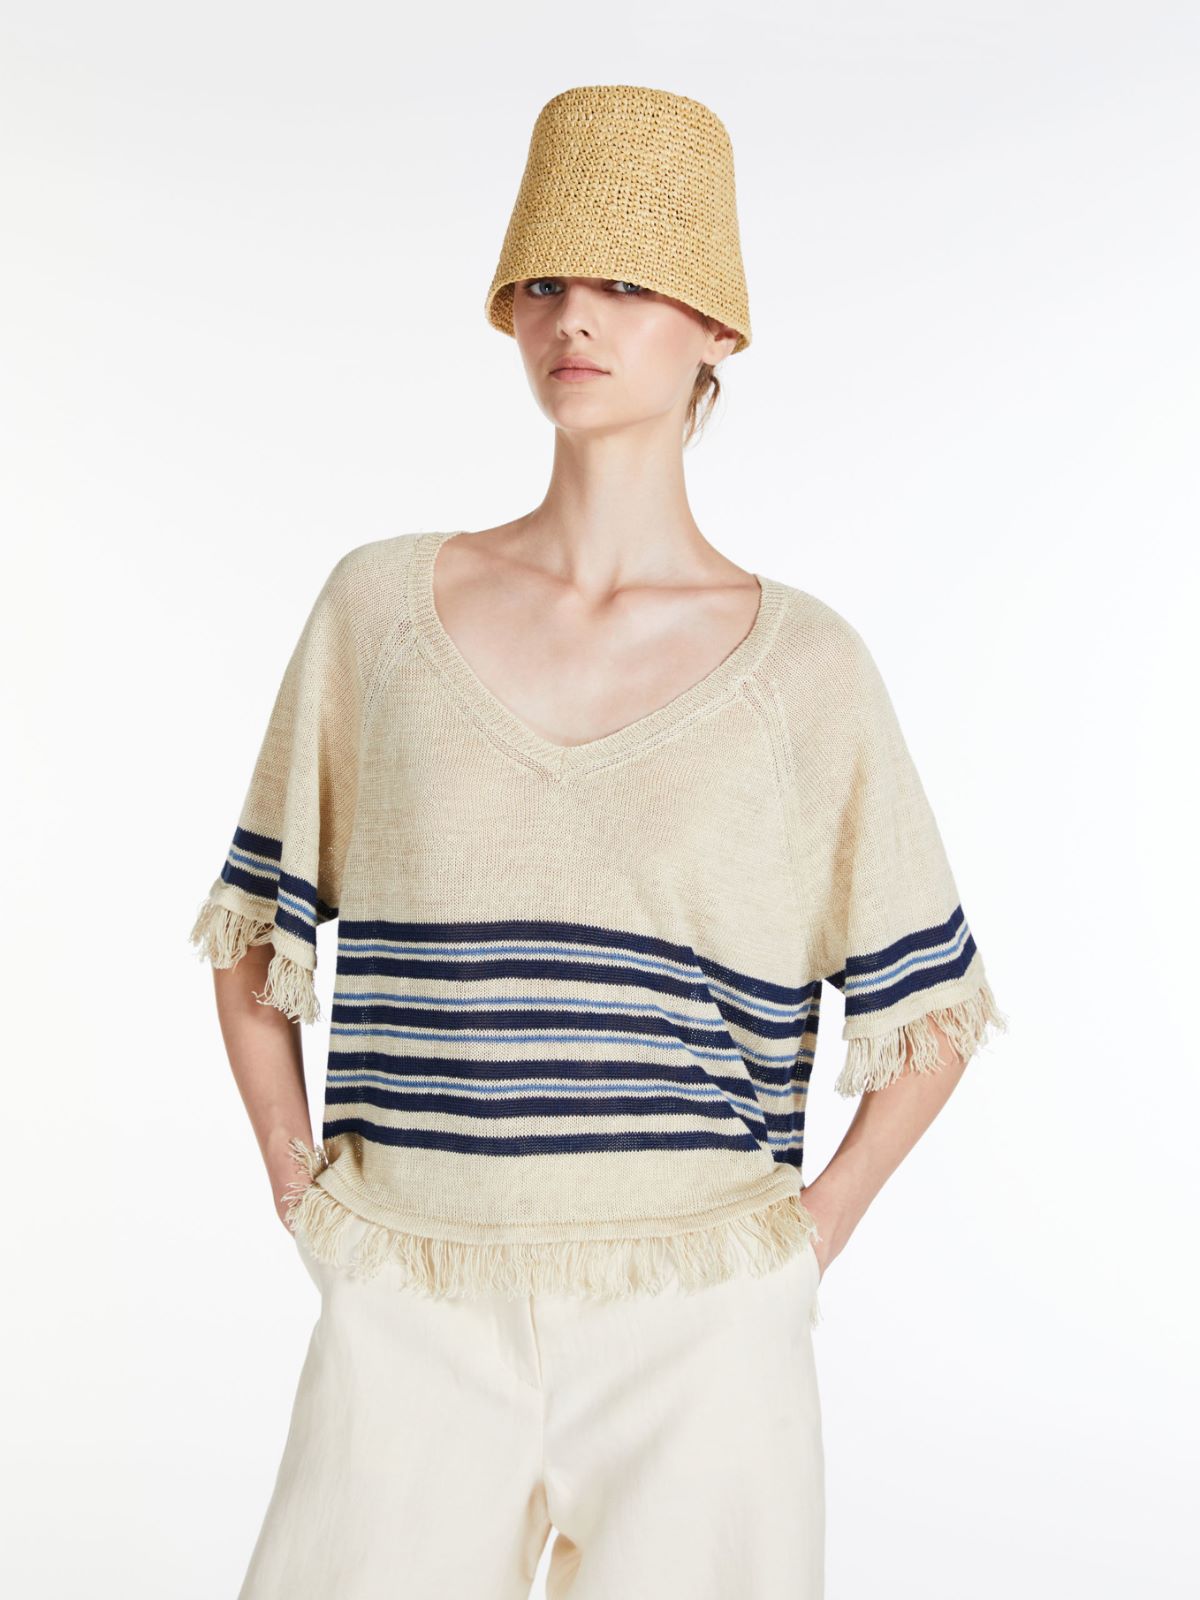  Linen knit jumper - IVORY - Weekend Max Mara - 4